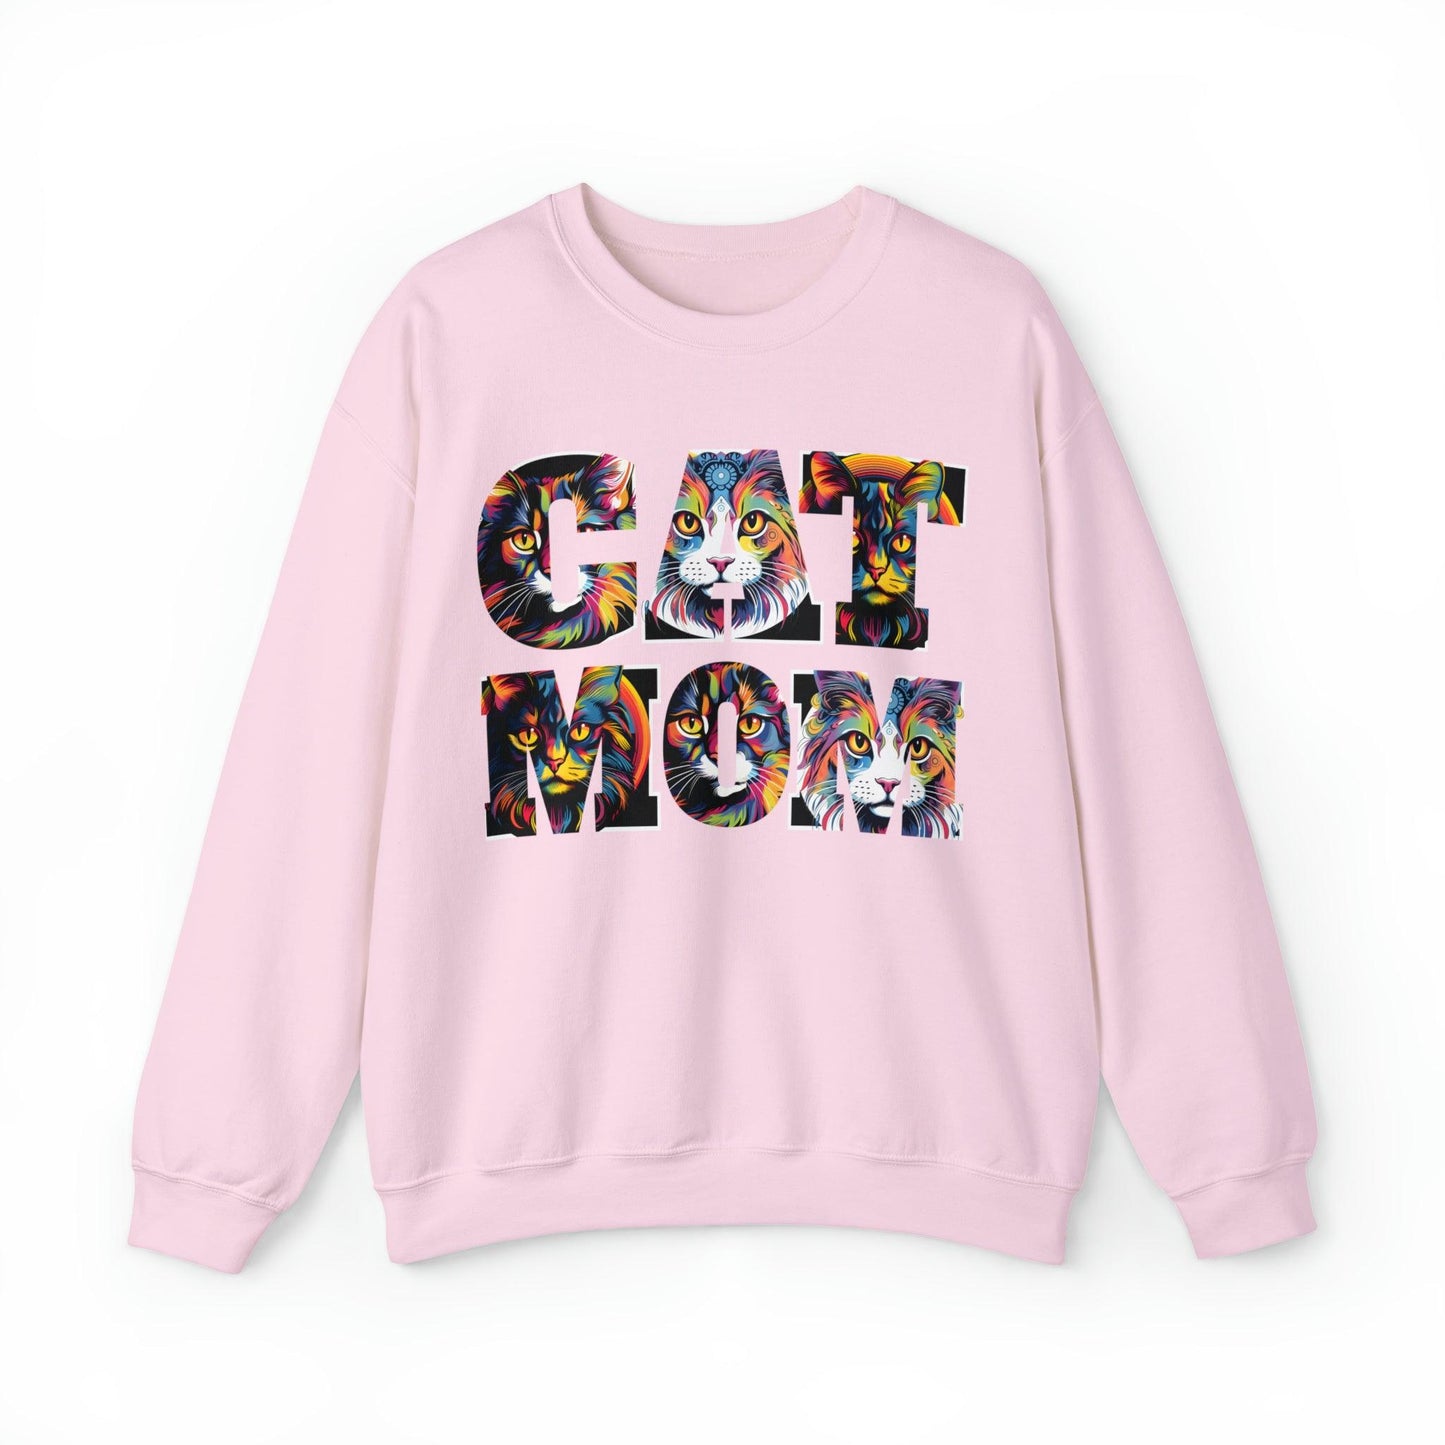 Vintage Cat Sweatshirt Cat Mom Sweatshirt Cat Crewneck Sweatshirt Cat Mom Gift Cat Lover Gift Animal Lover Cat Mama Shirt Cat Lover Sweater